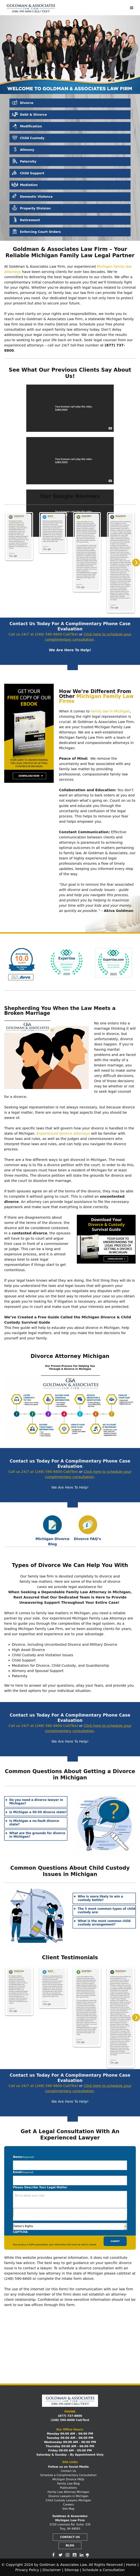 Goldman & Associates - Detroit MI Lawyers